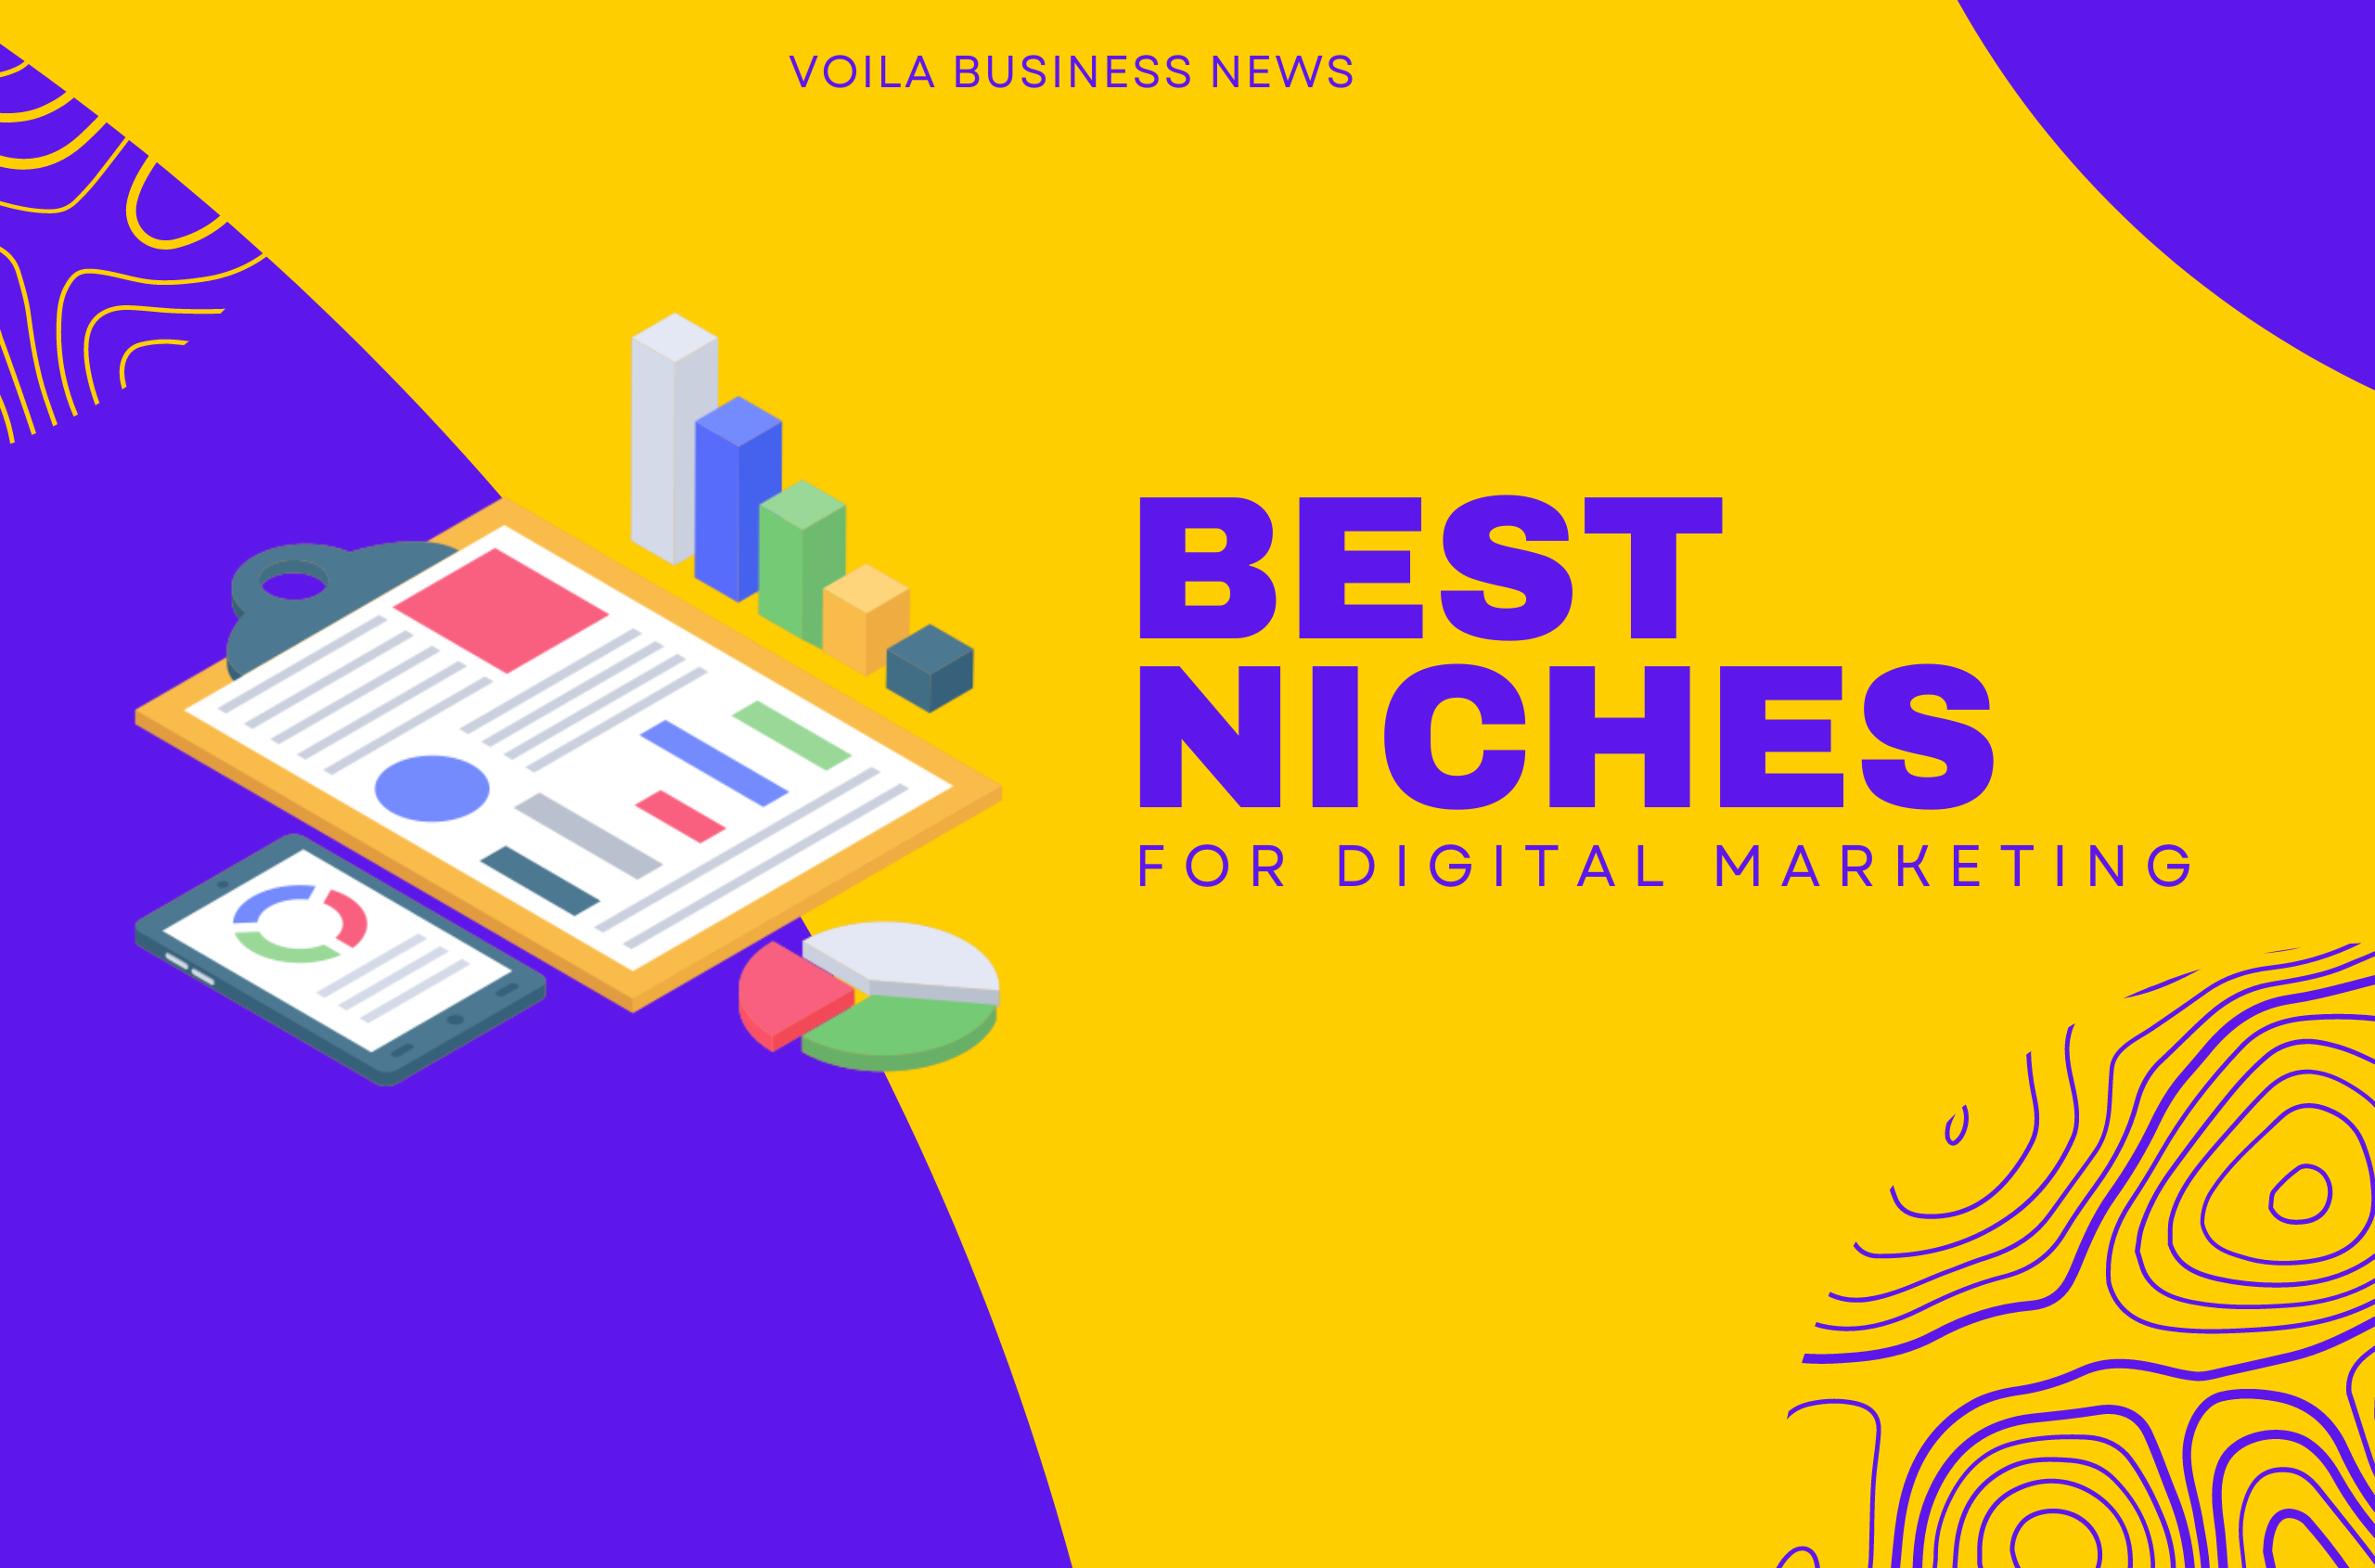 Best Niches for Digital Marketing